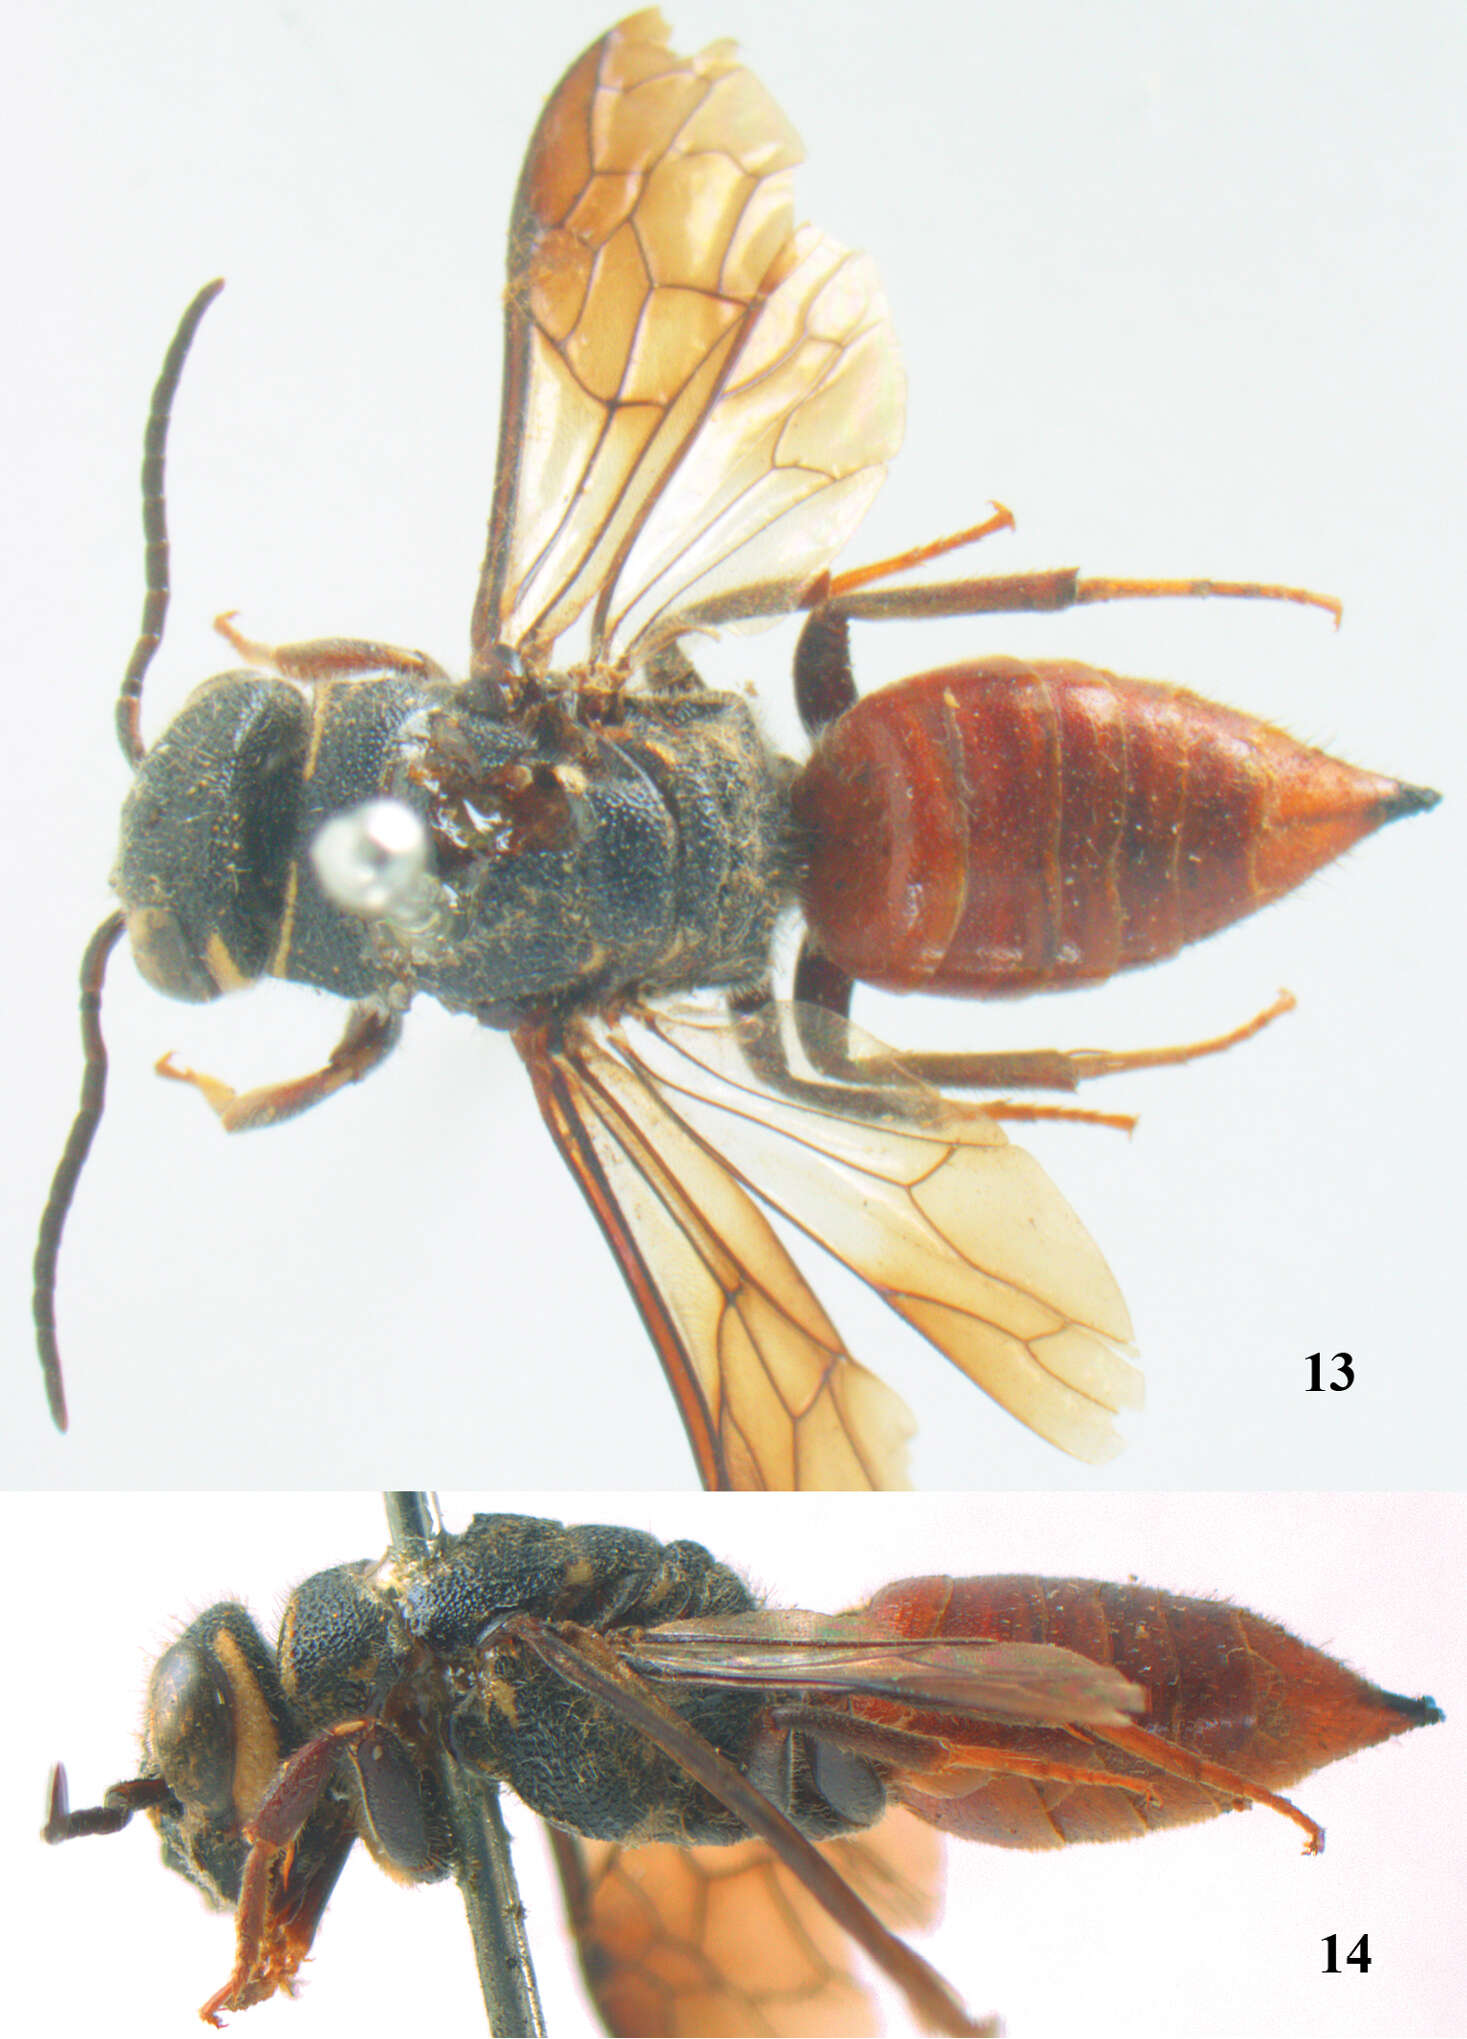 Image of sapygid wasps